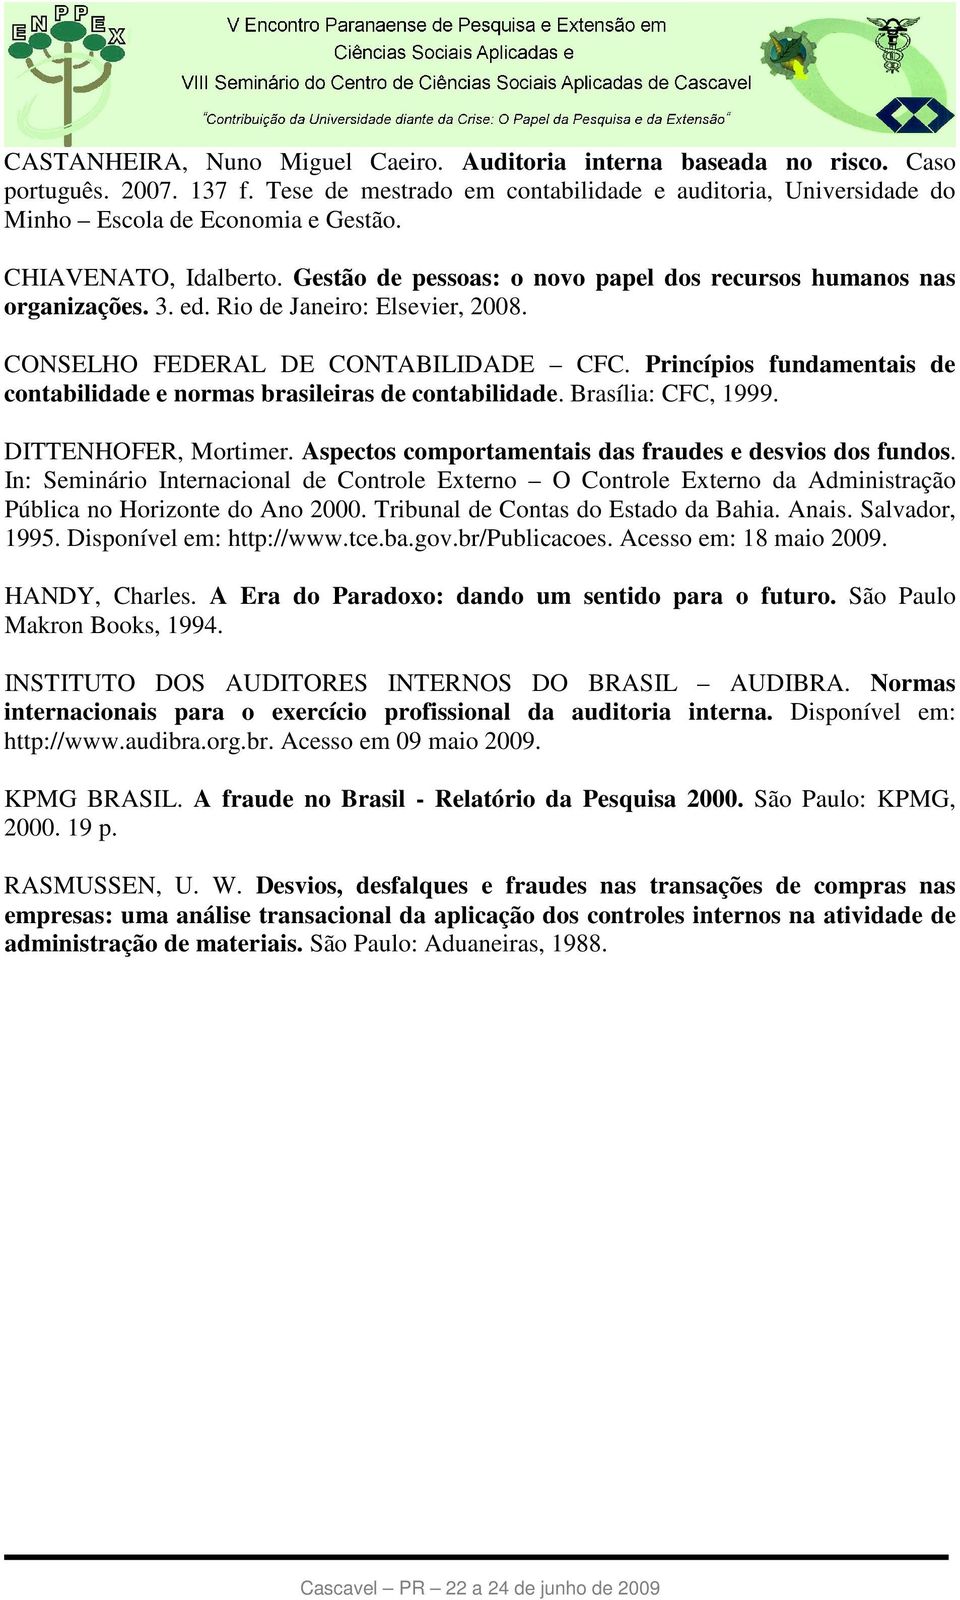 Princípios fundamentais de contabilidade e normas brasileiras de contabilidade. Brasília: CFC, 1999. DITTENHOFER, Mortimer. Aspectos comportamentais das fraudes e desvios dos fundos.